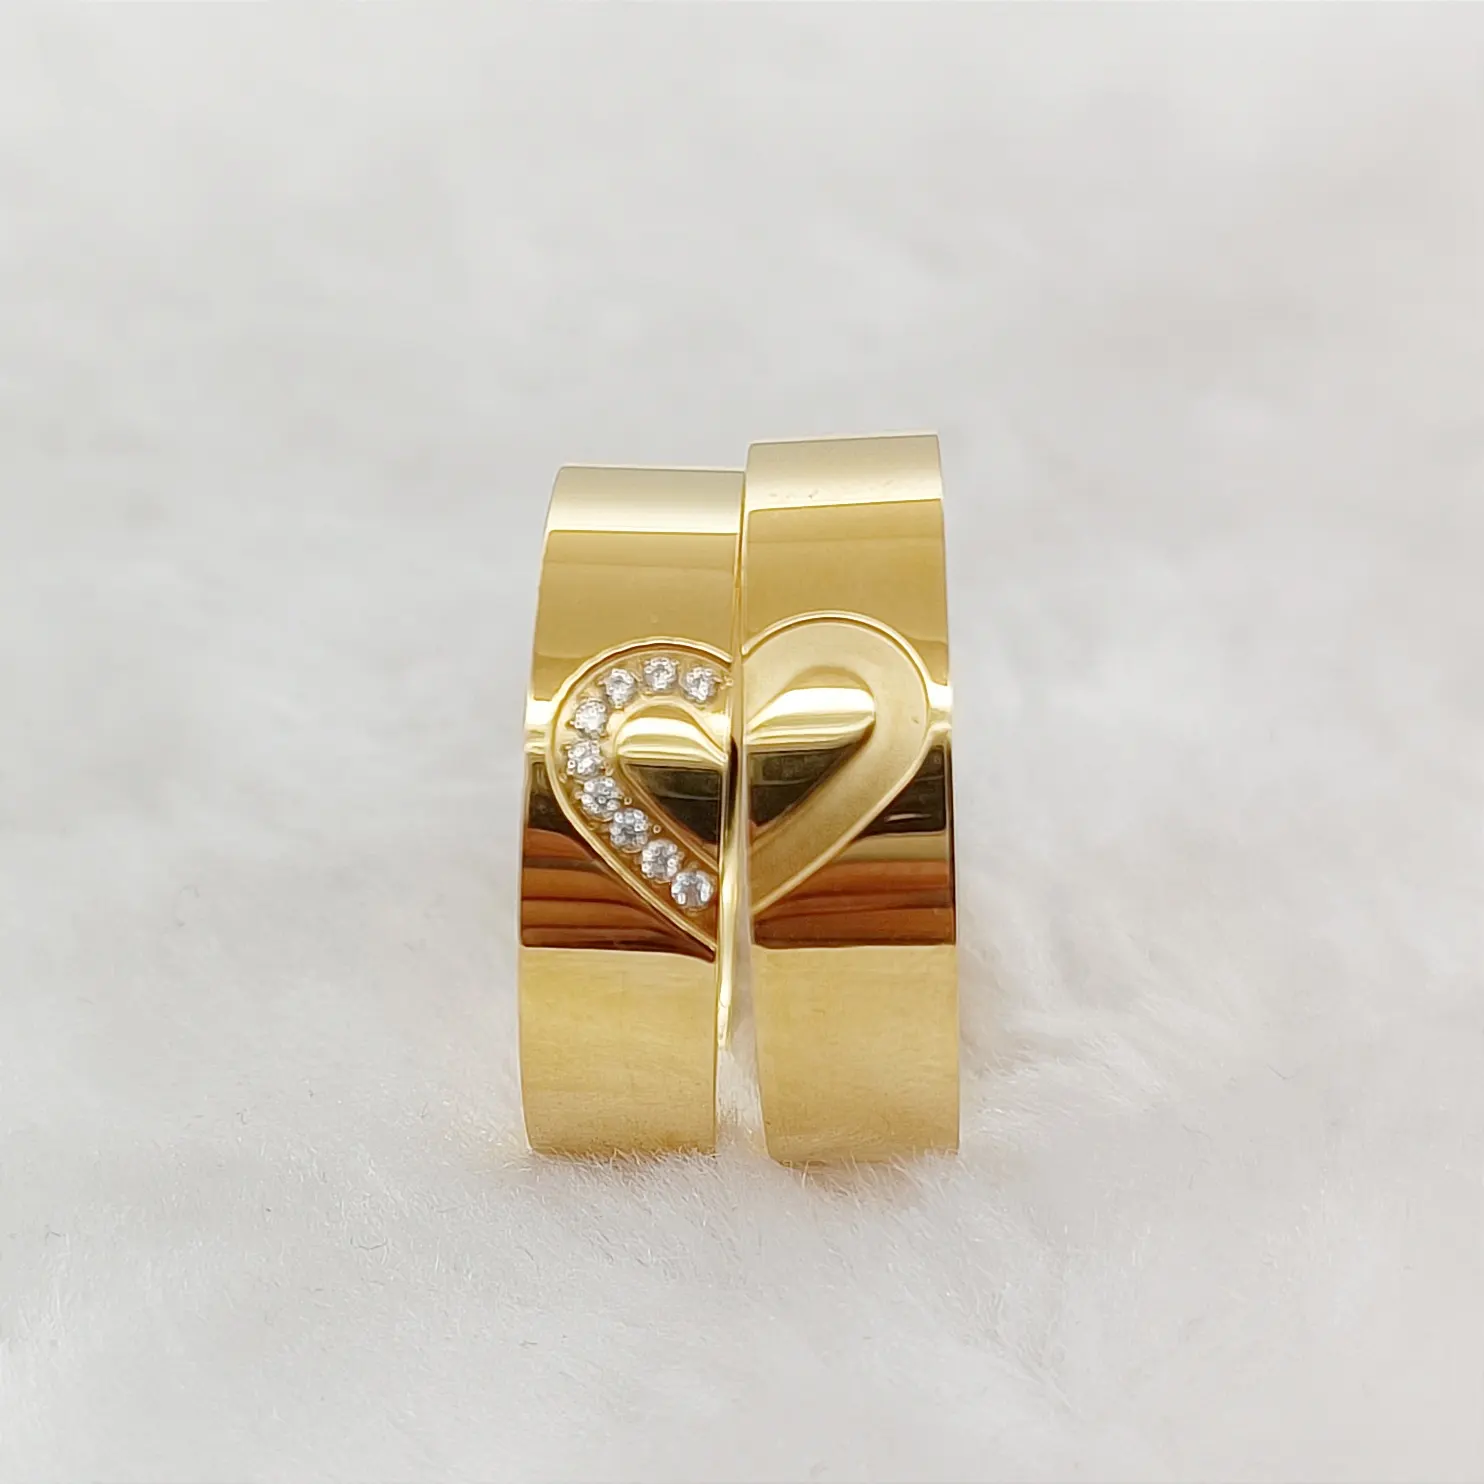 Yüksek kalite aşk kalp şekilli ittifaklar 2 adet söz çiftler düğün nişan yüzük setleri toptan 18k altın kaplama takı